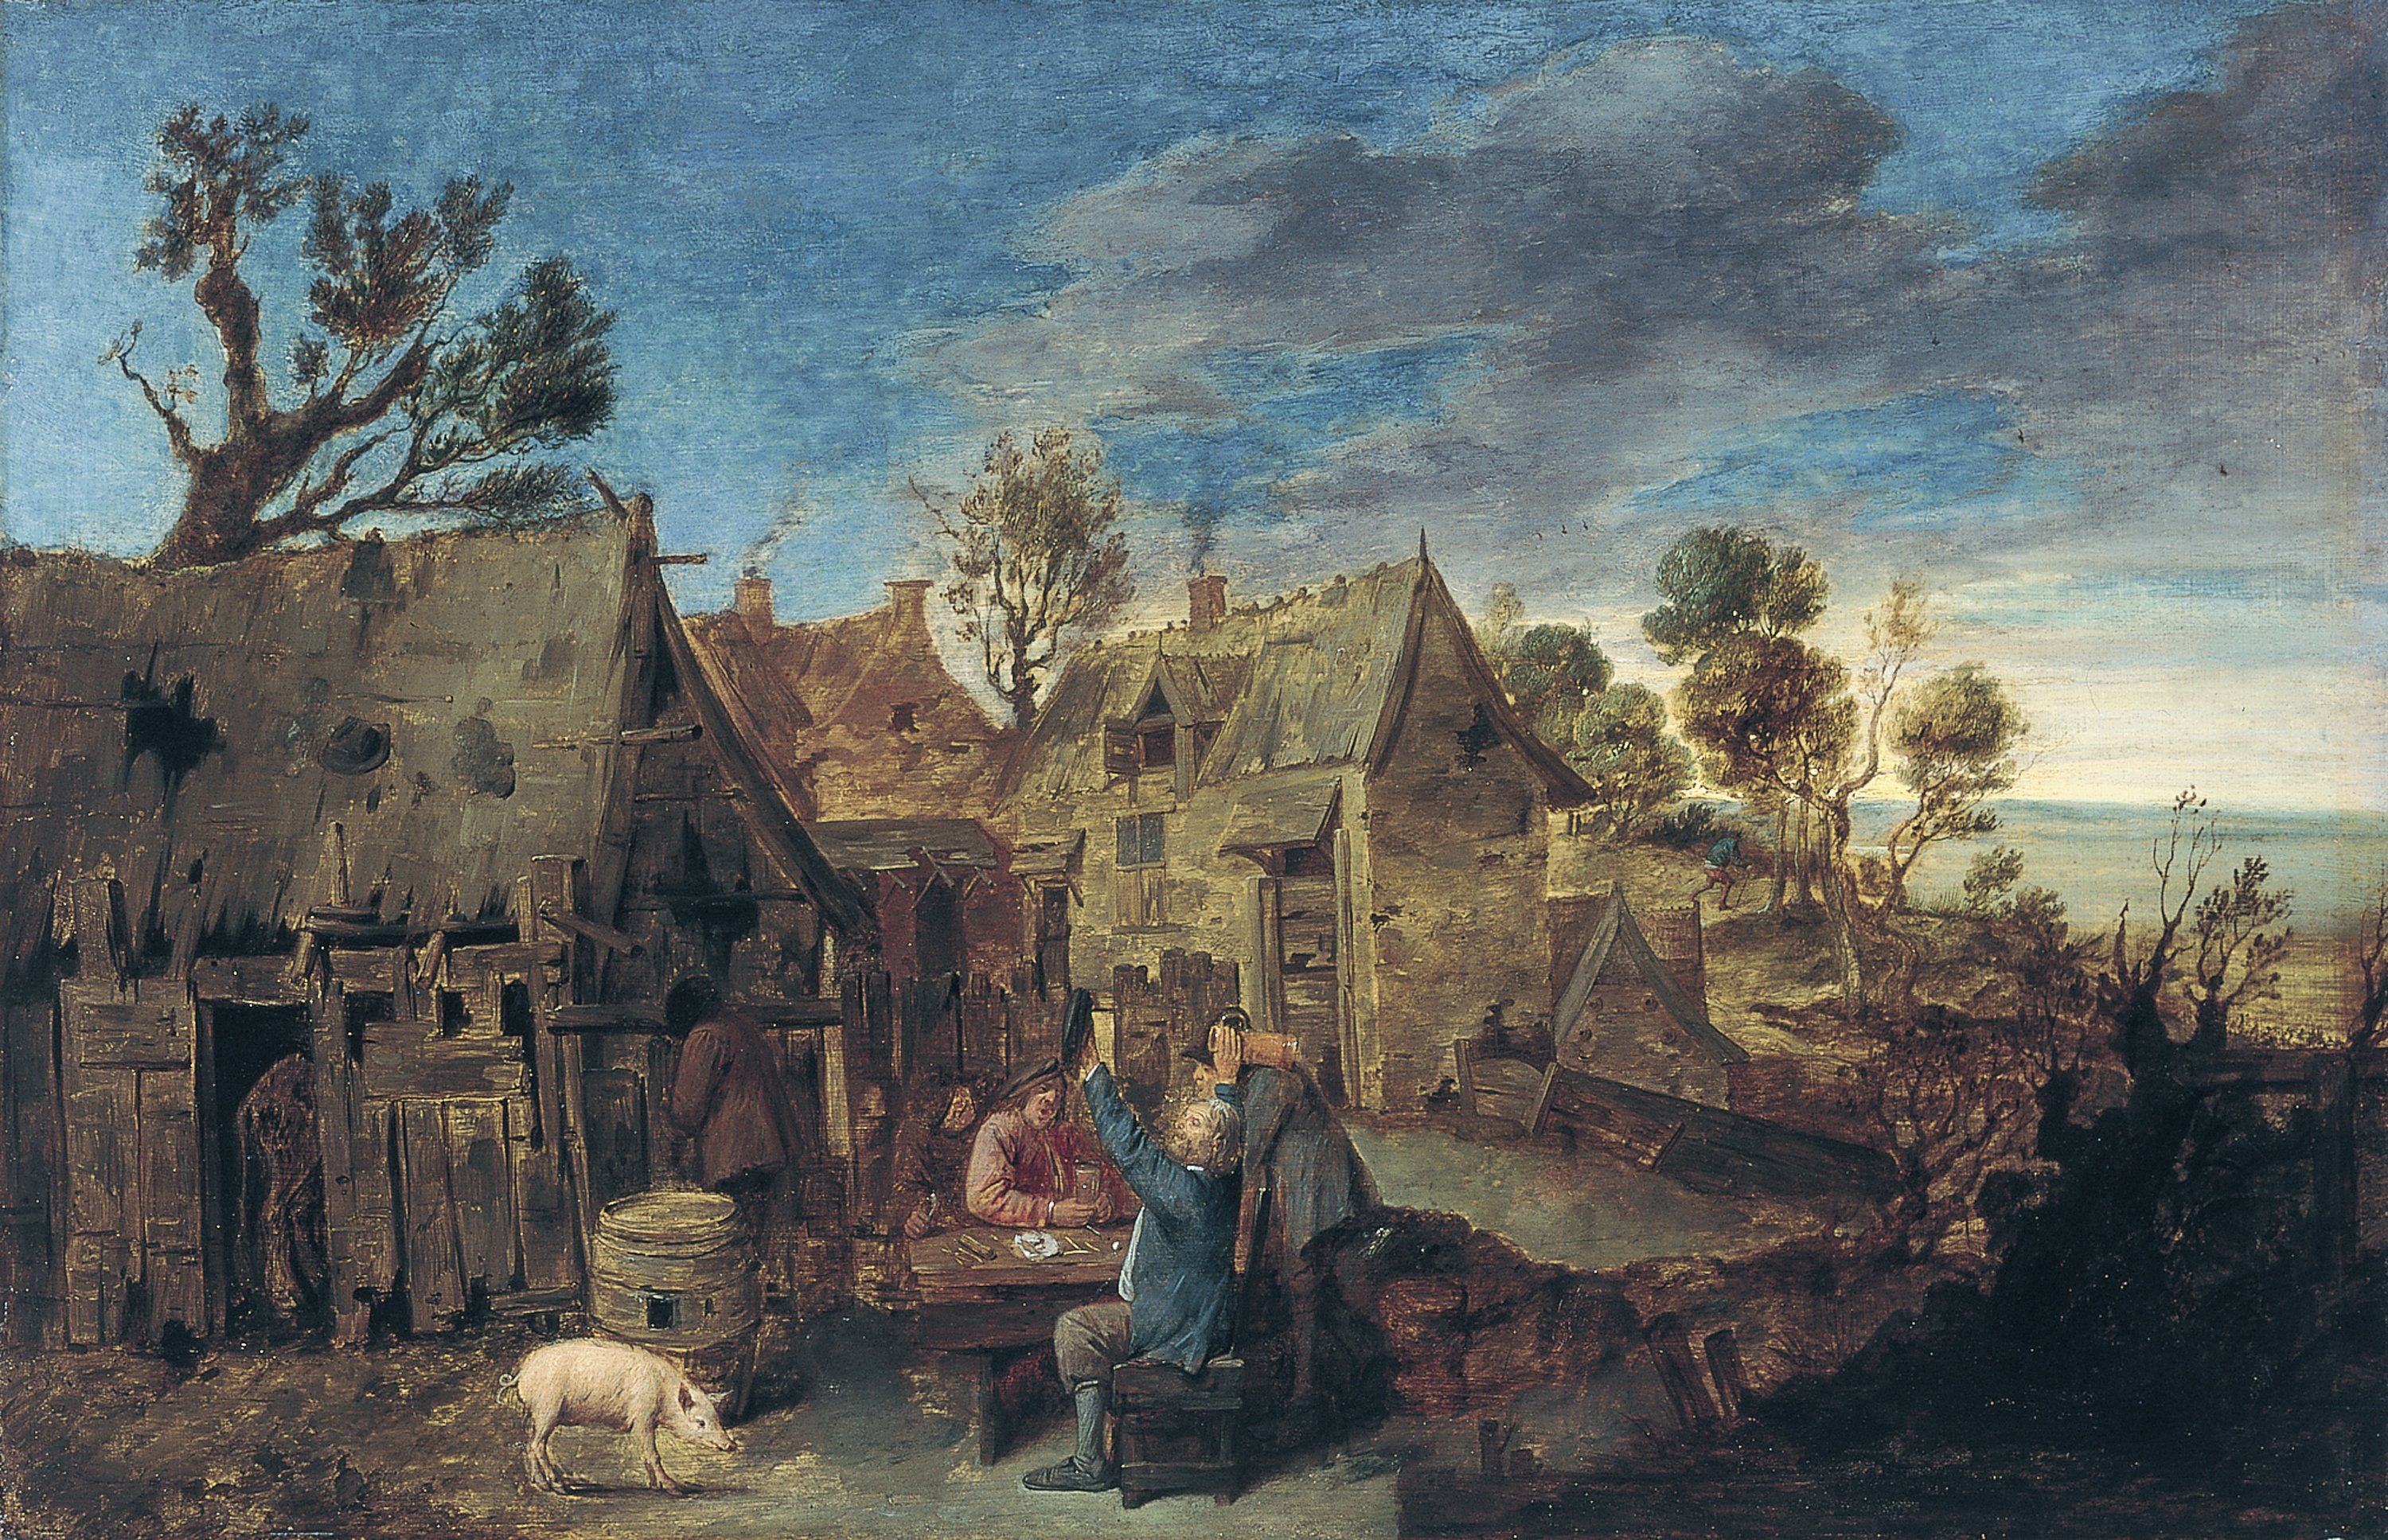 Village Scene with Men drinking. Escena aldeana con hombres bebiendo, c. 1631-1635